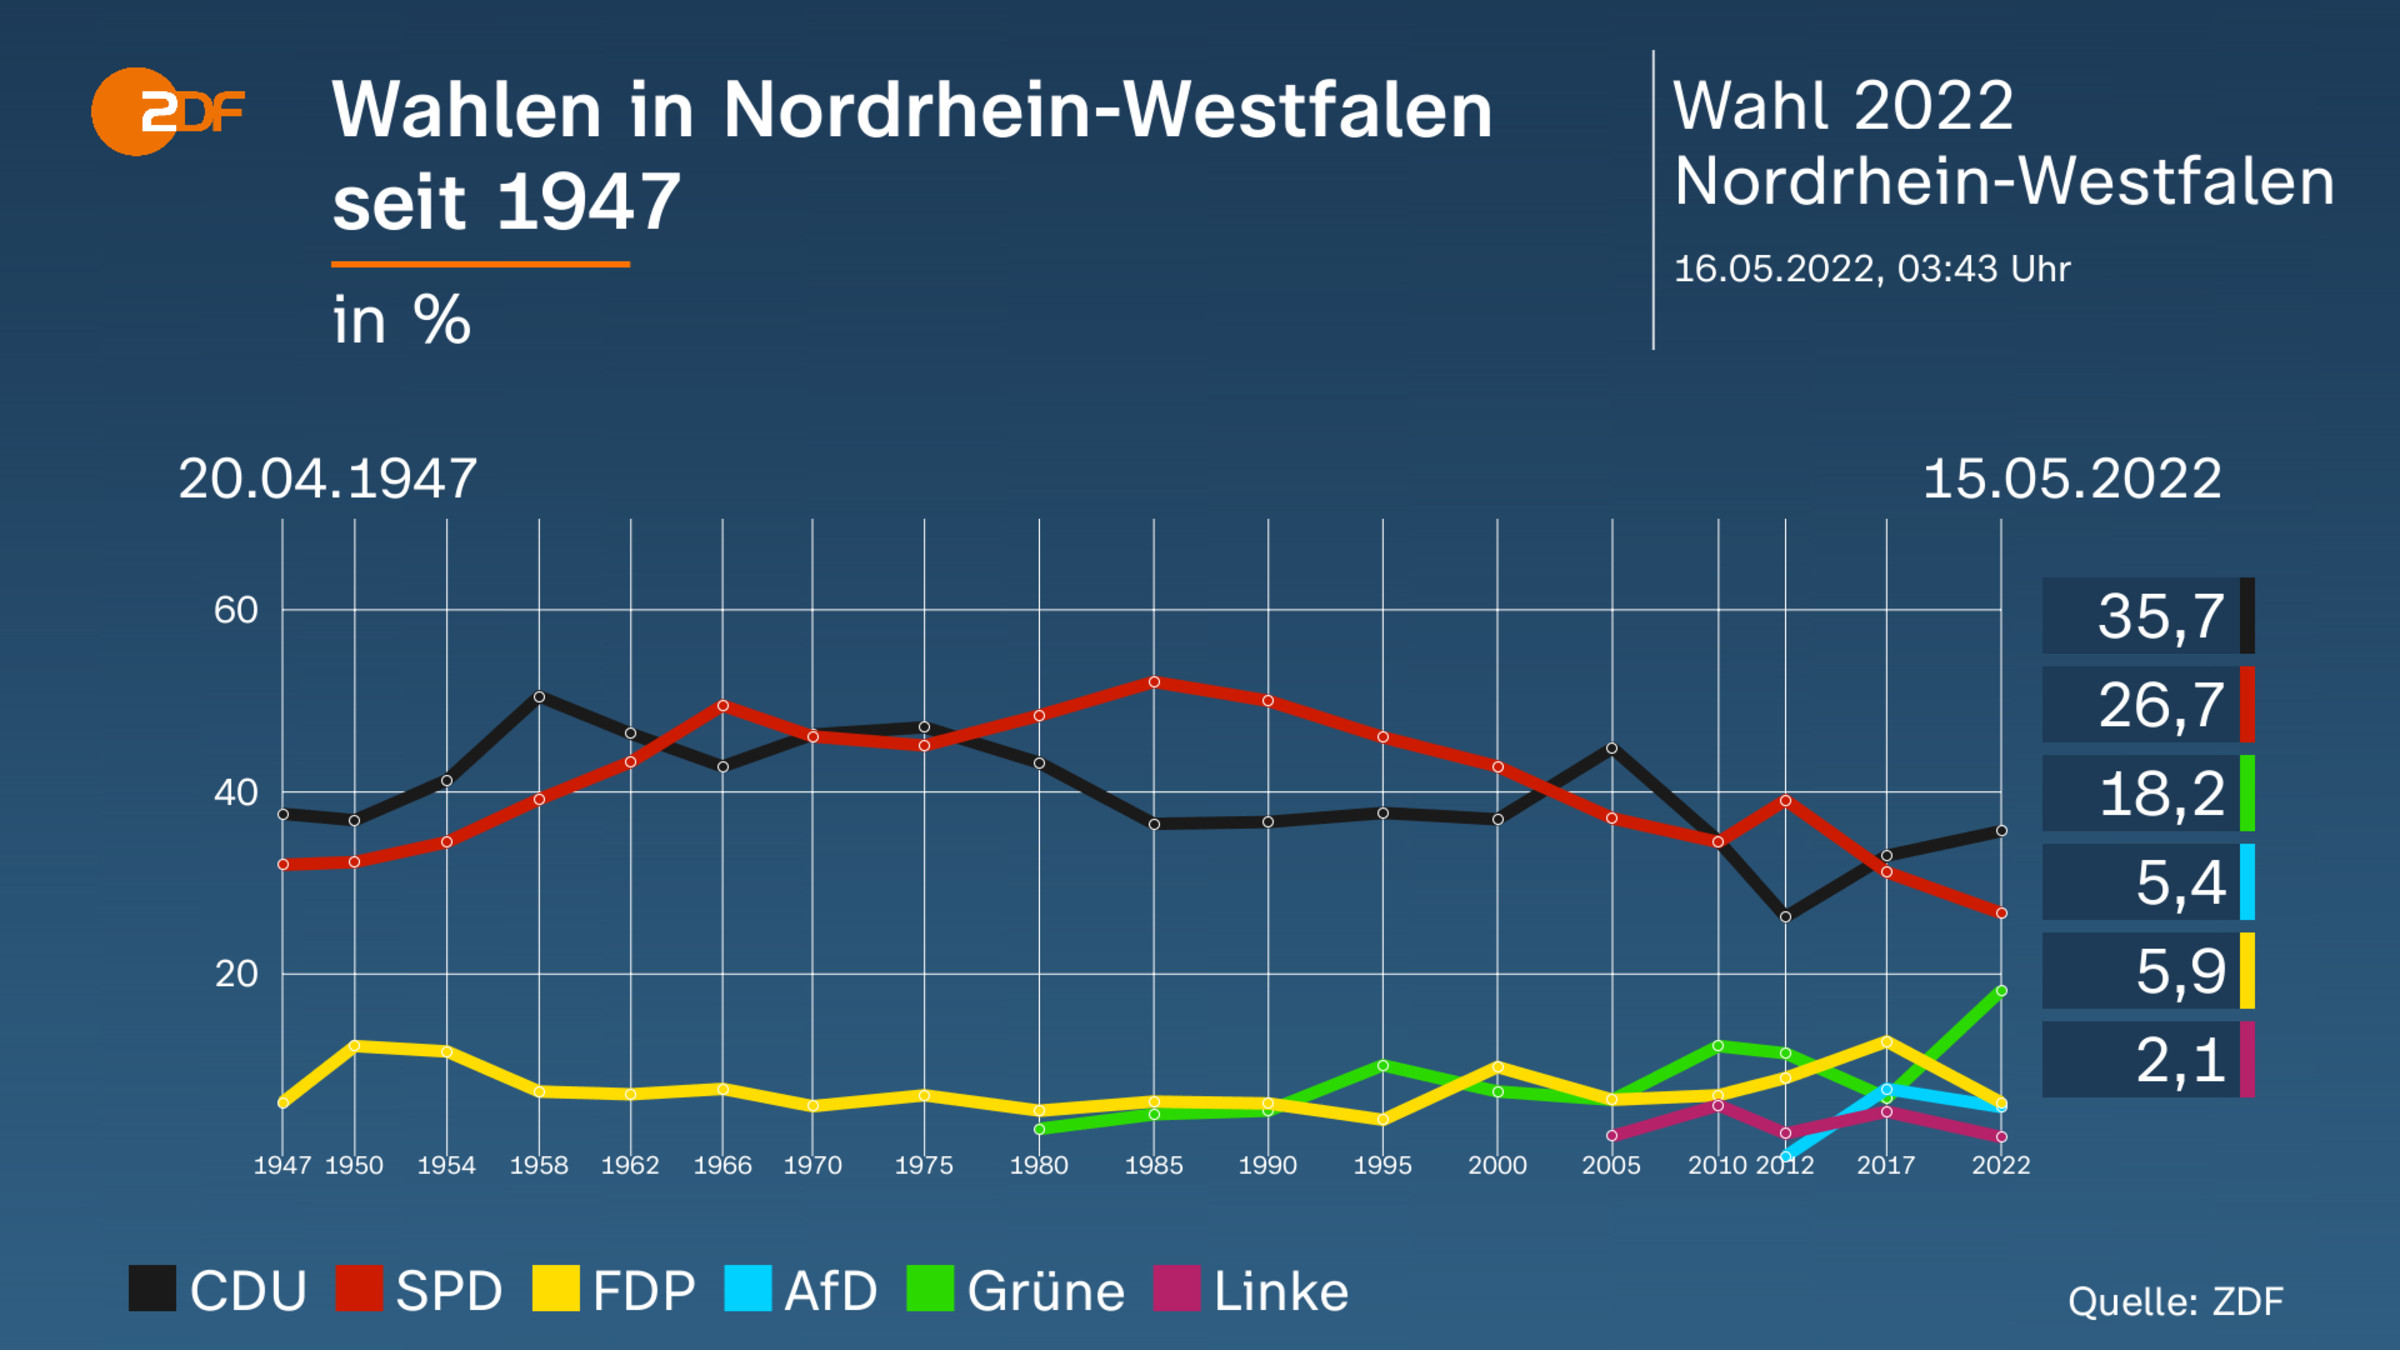 Wahlen in Nordrhein-Westfalen seit 1947